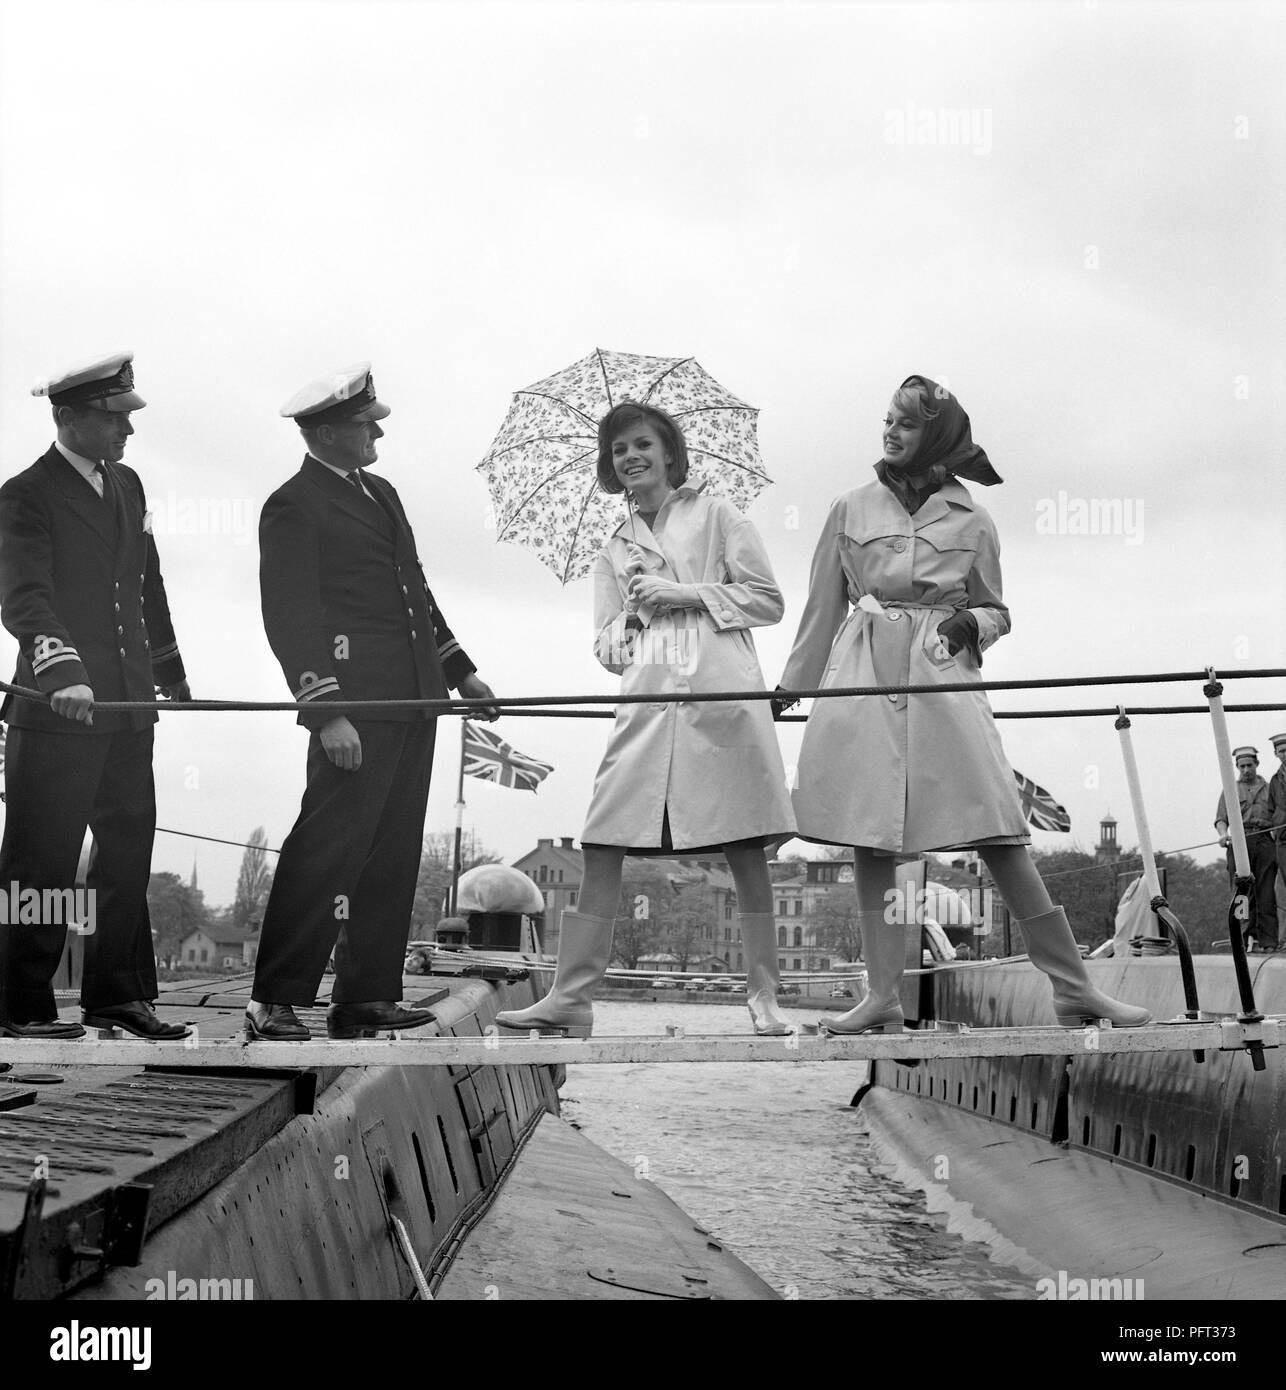 60er Jahre Mode. Zwei fashion Modelle und die Obersten der Britischen u-Boote Alcide und Orpheus. Die U-Boote im Hafen von Stockholm verankert. Die Modelle tragen die Herbste mode Mäntel und Schals. Schweden Mai 1962 Stockfoto